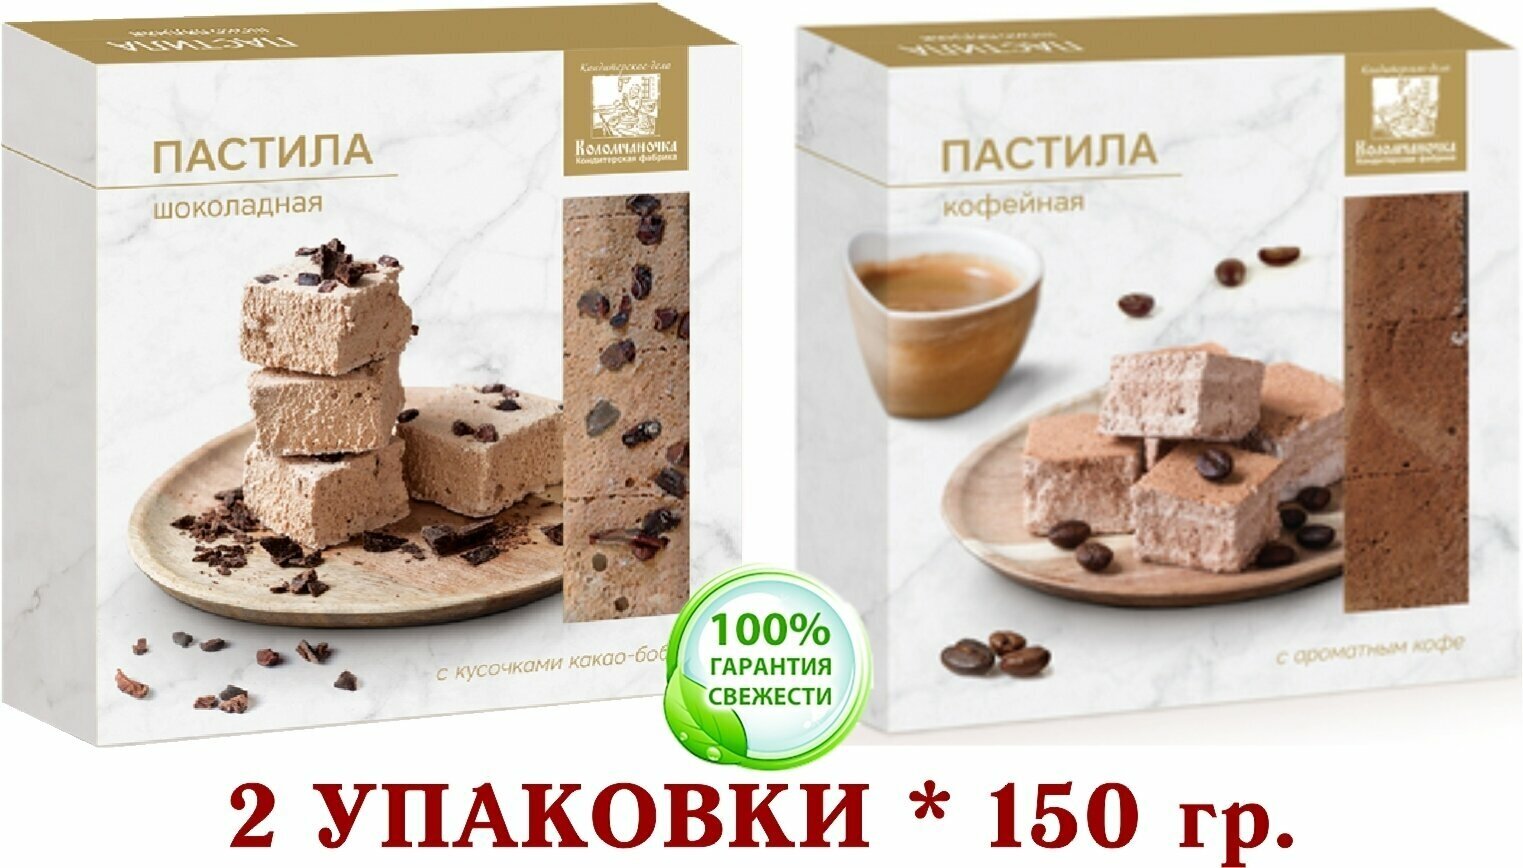 Пастила микс шоколадная/кофейная коломчаночка (коломна) 2 уп. * 150 гр,